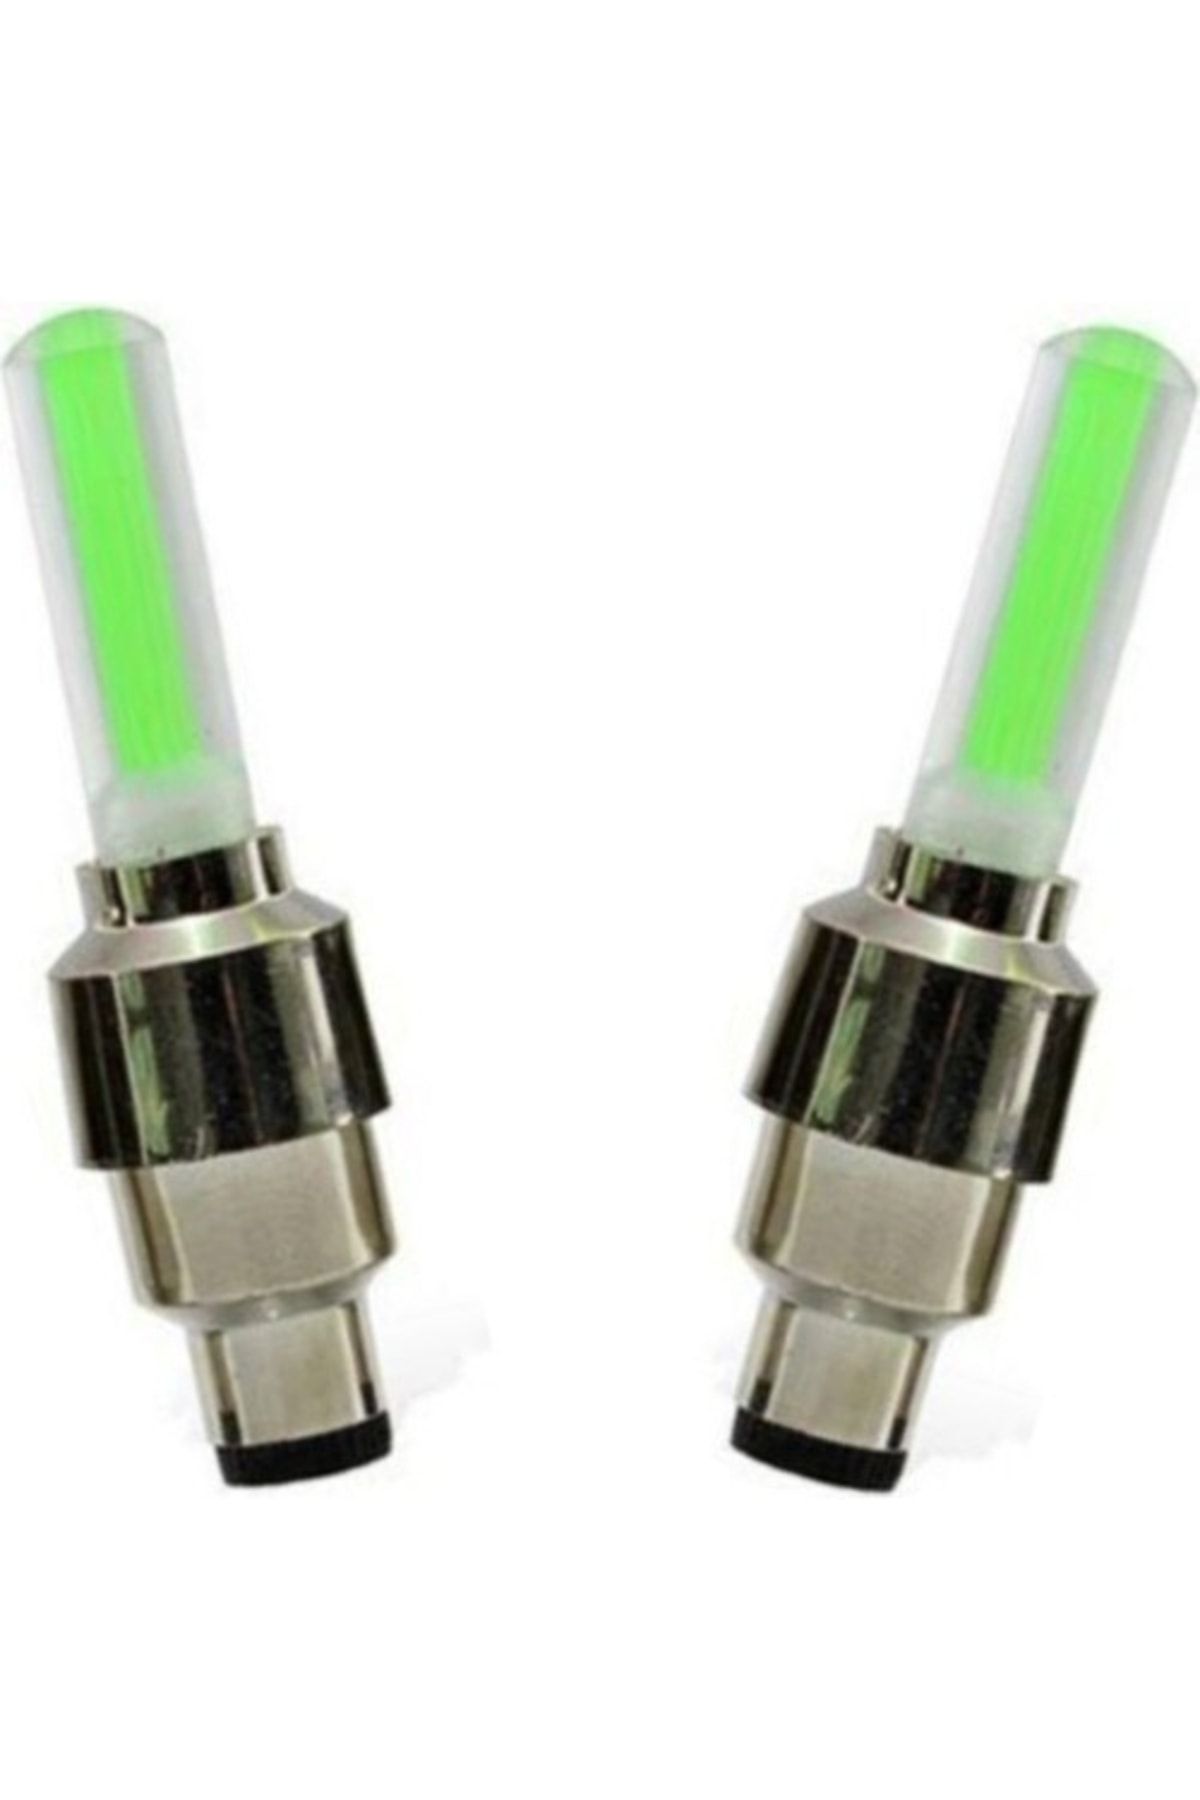 Neler Geldi Neler 2 Çift (4 Adet) Yeşil Led Işıklı Hareket Sensörlü Işıklı Bisiklet Araba Motor Sibop Kapağı Lambası